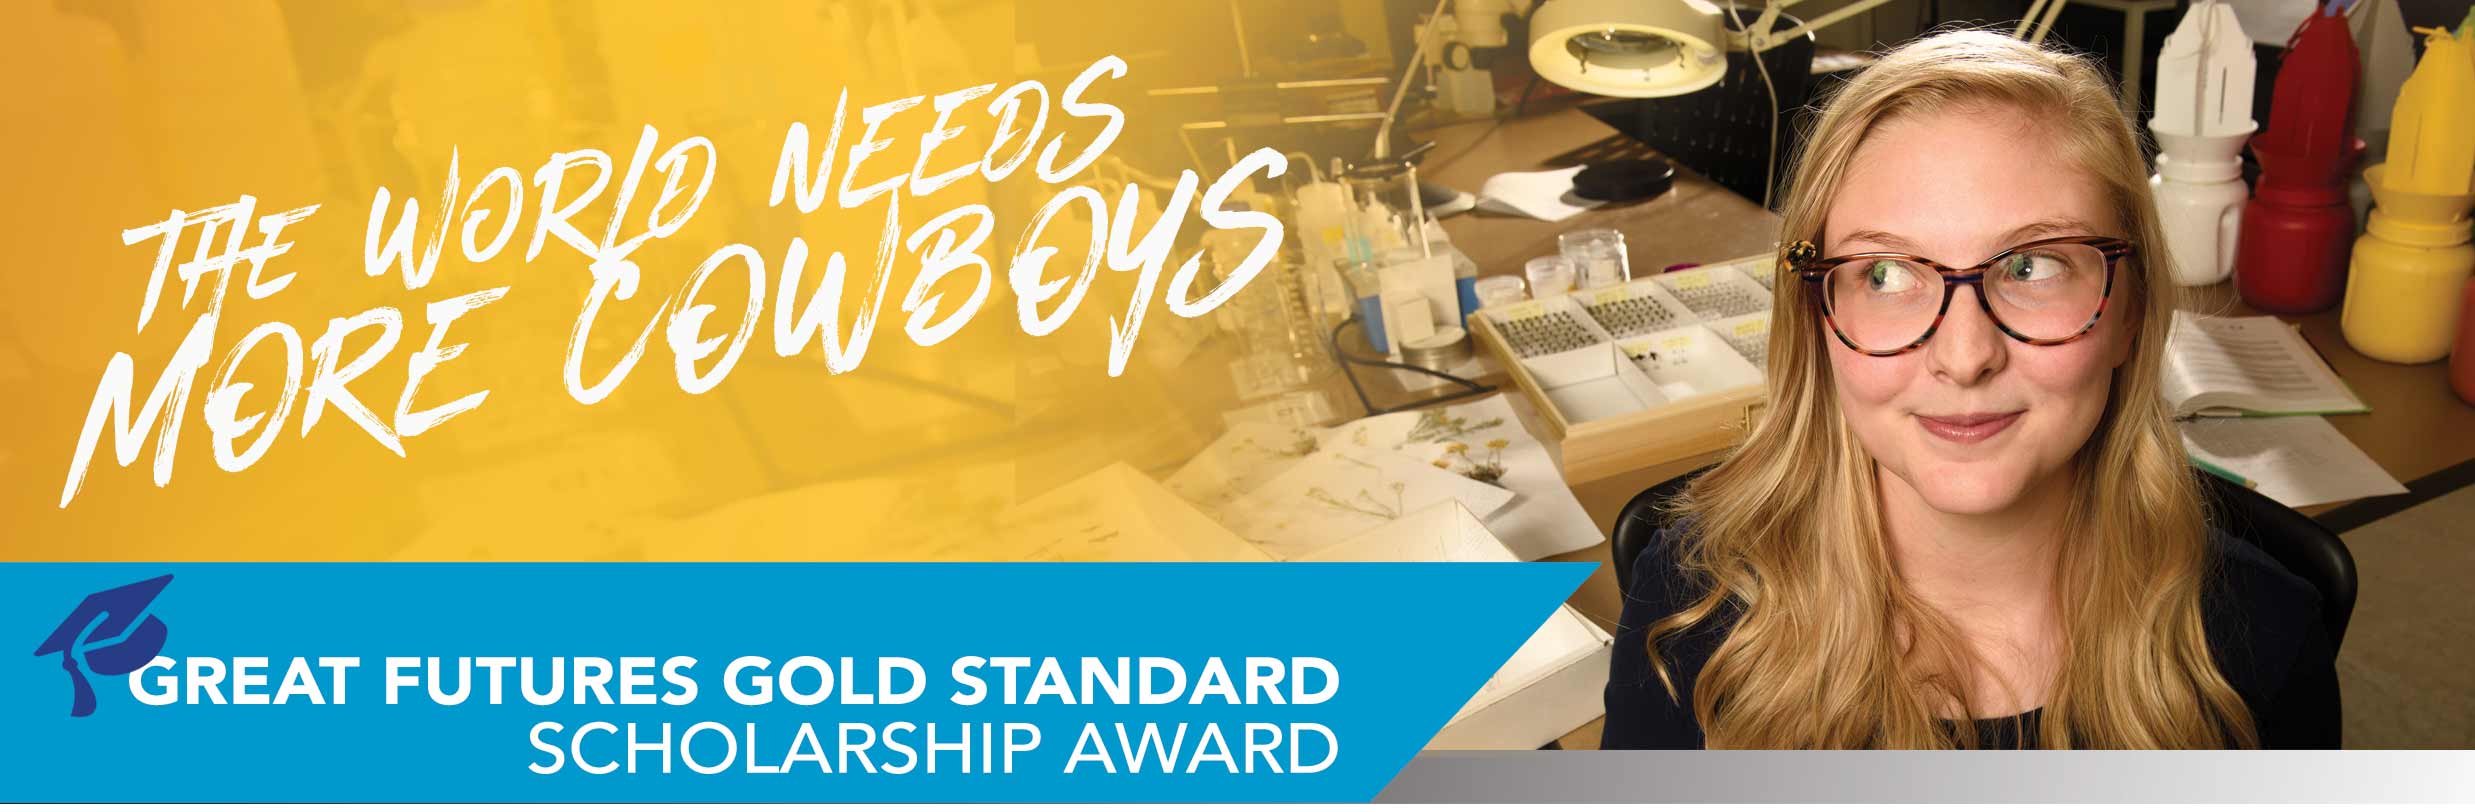 Great Futures Gold Standard Scholarship Award